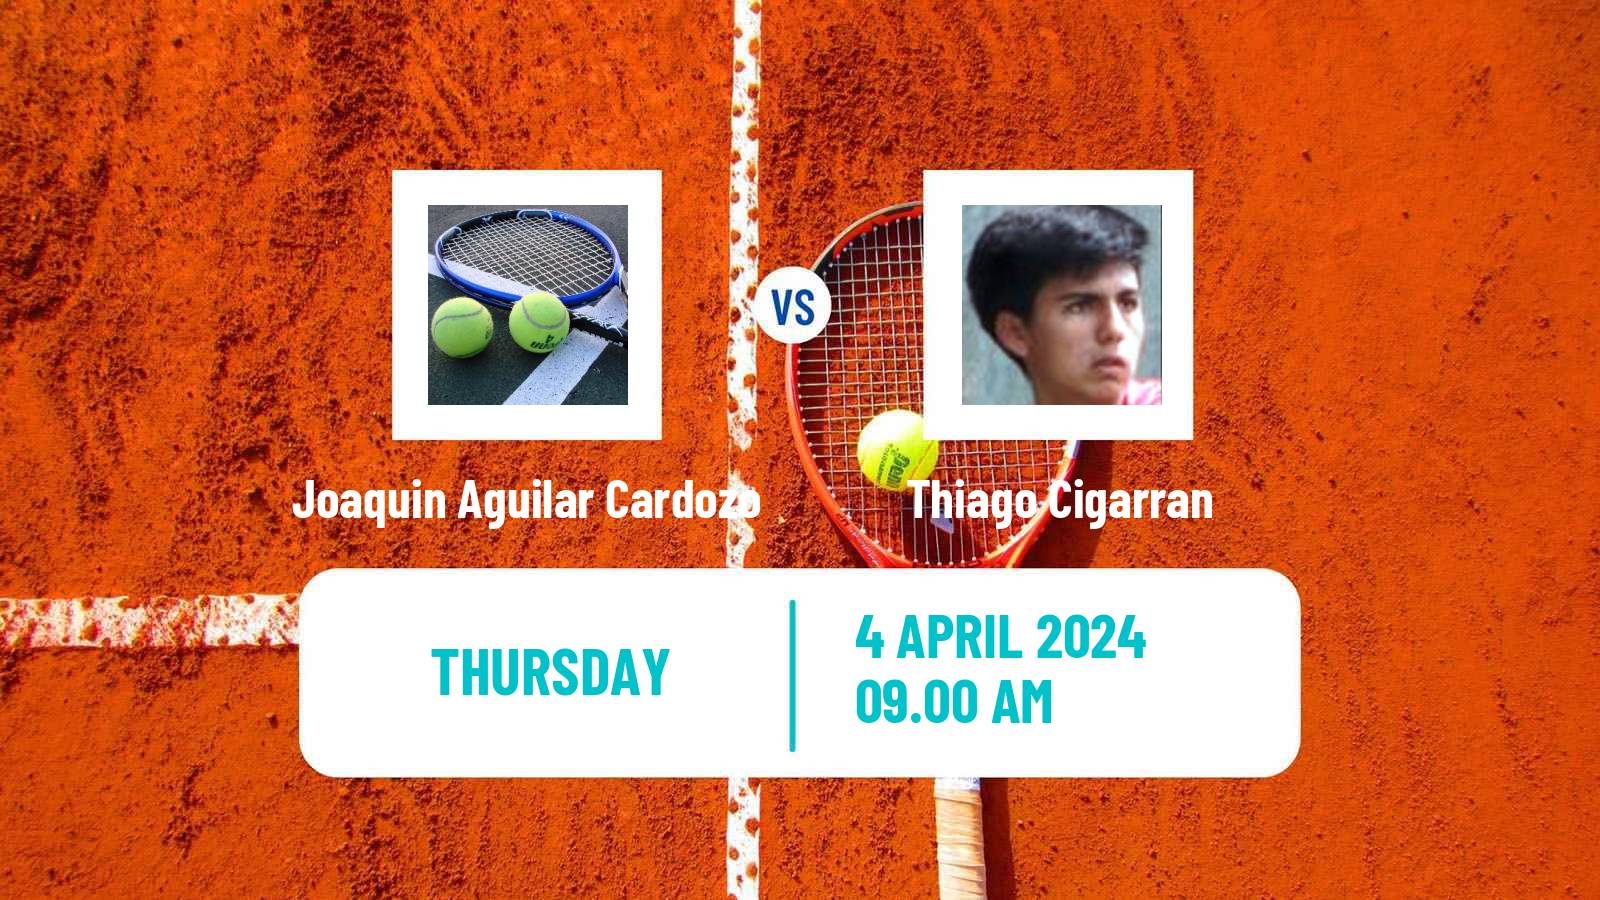 Tennis ITF M15 Bragado 2 Men Joaquin Aguilar Cardozo - Thiago Cigarran